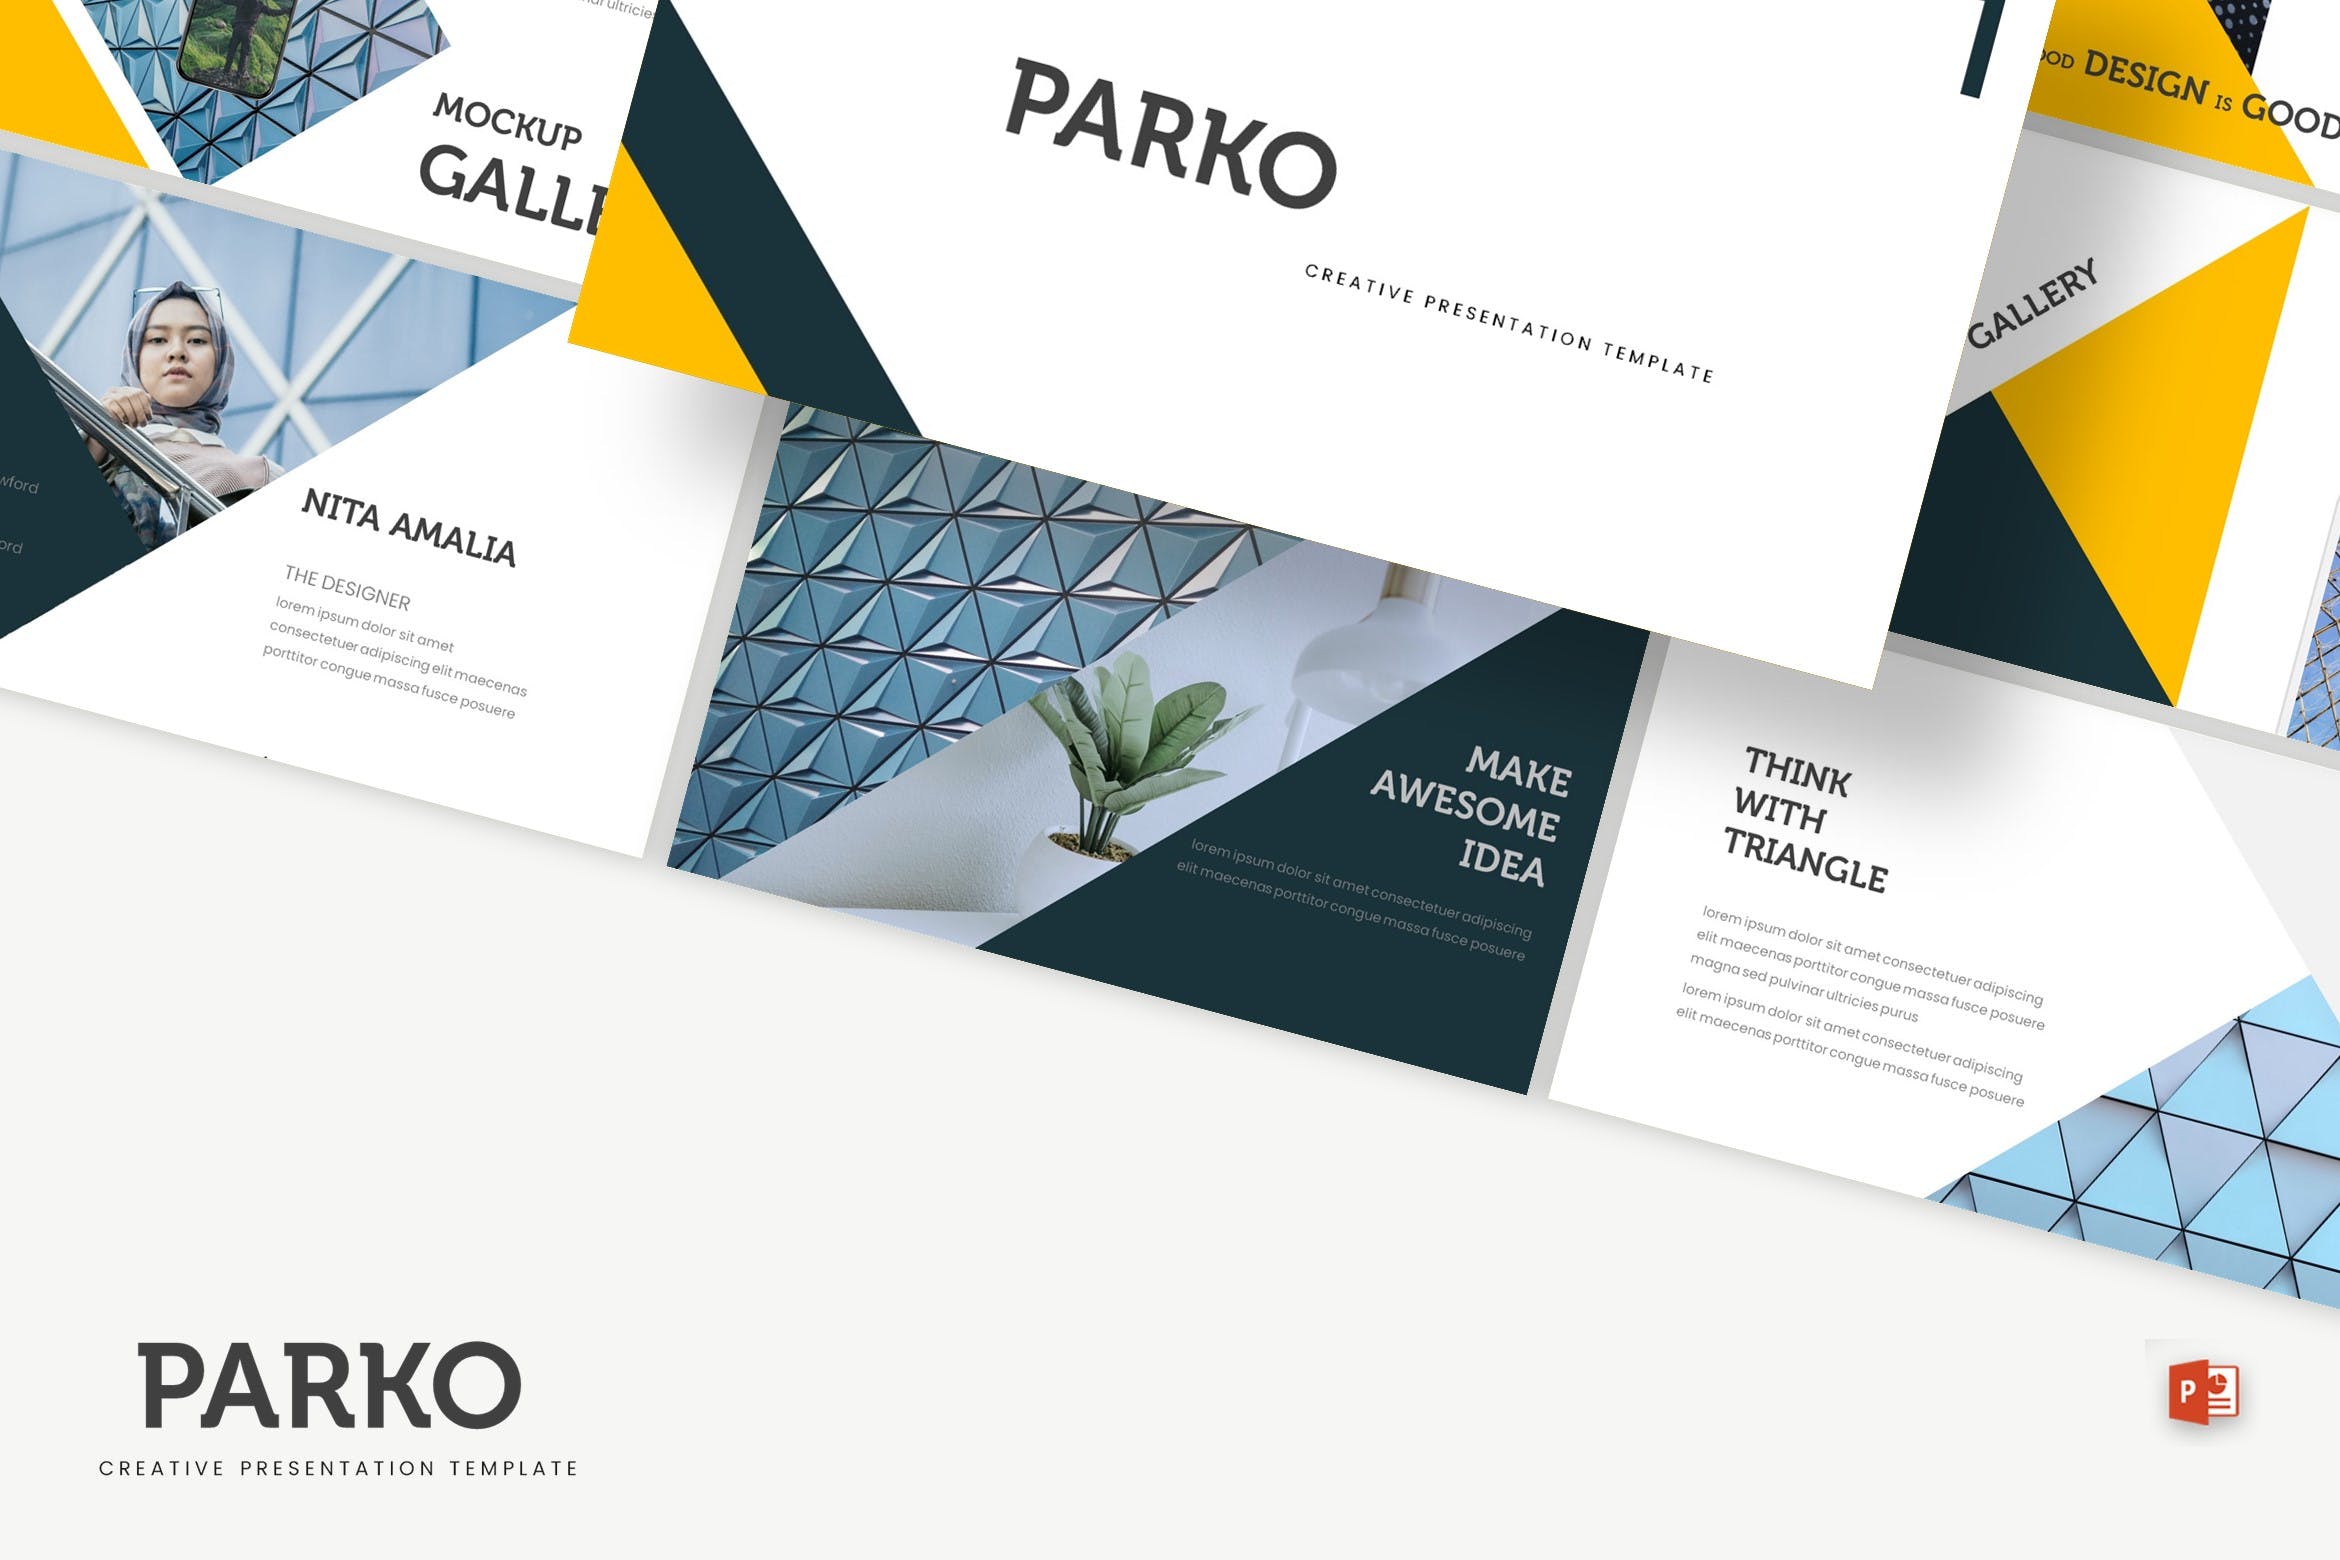 高端建筑设计服务公司蚂蚁素材精选PPT模板 Parko – Powerpoint Template插图